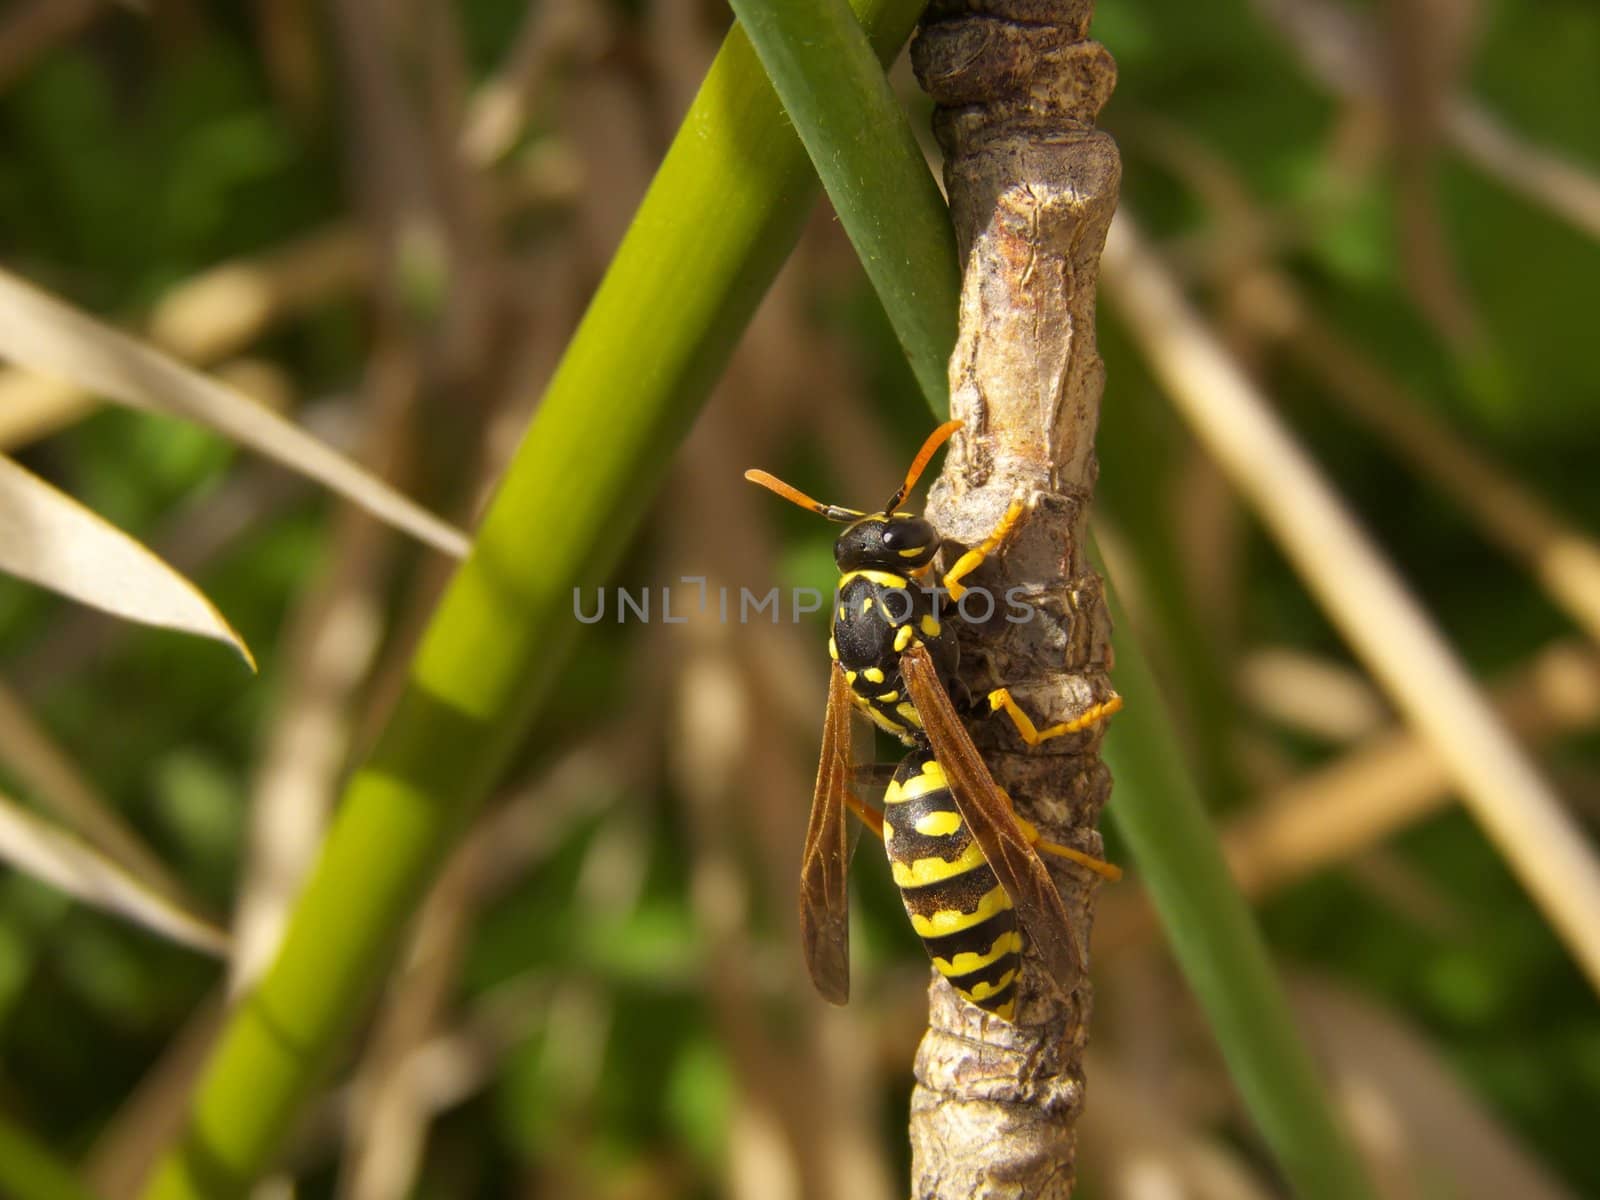 digital close-up image of a climbing wasp